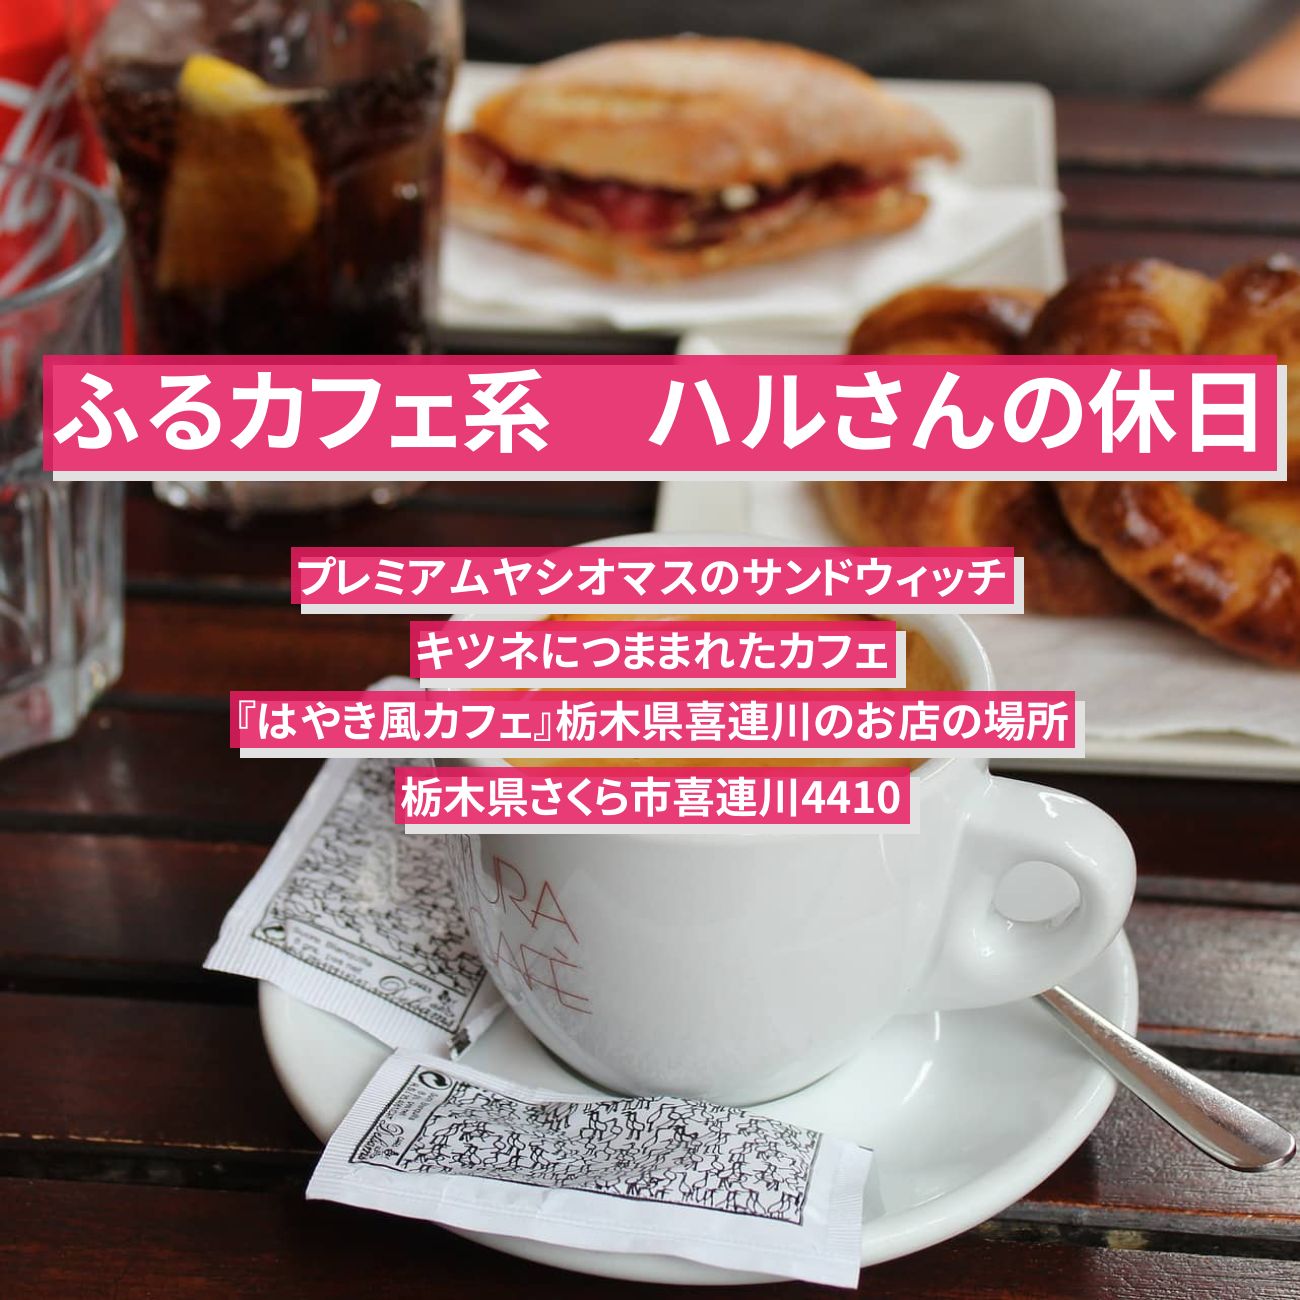 【ふるカフェ系 ハルさんの休日】マスのサンドウィッチ『はやき風カフェ』栃木県喜連川のキツネにつままれたカフェのお店